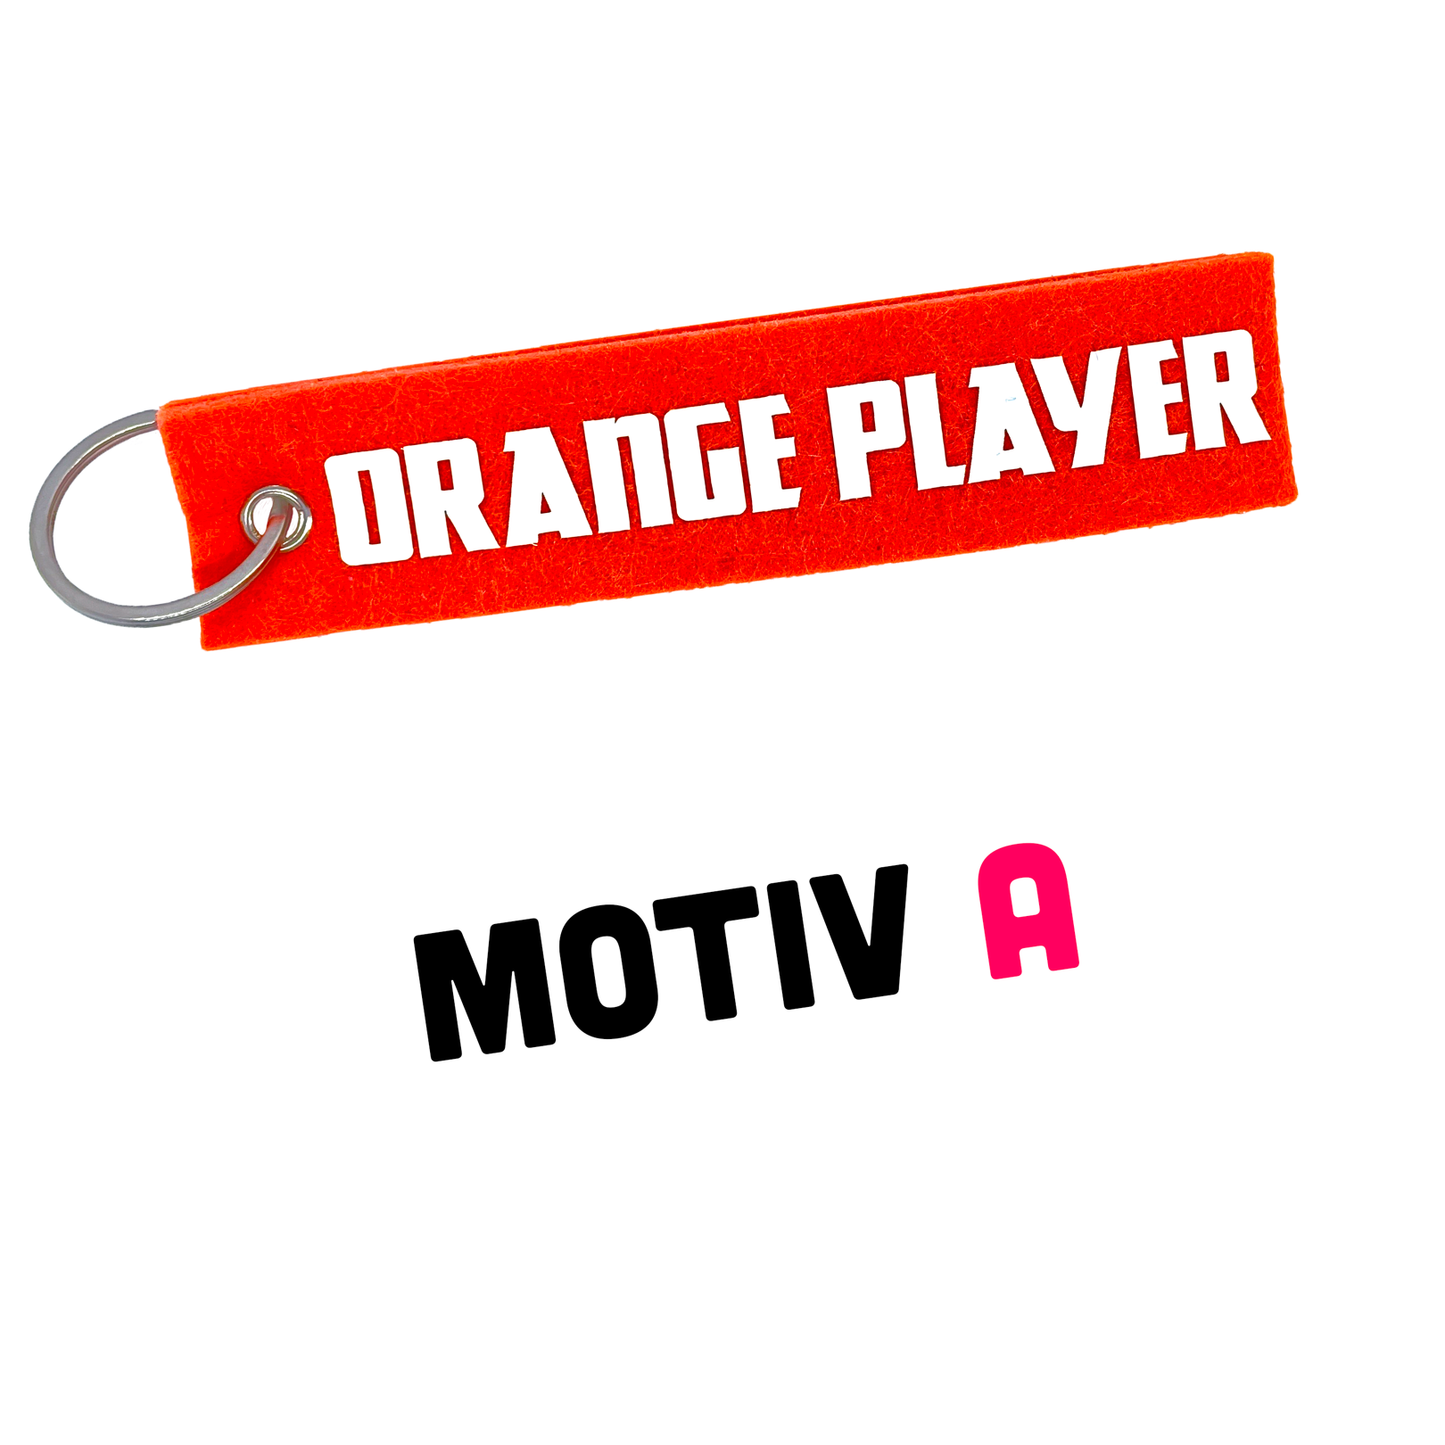 Schlüsselanhänger Filz - Orange Player - Spielerfarbe orange